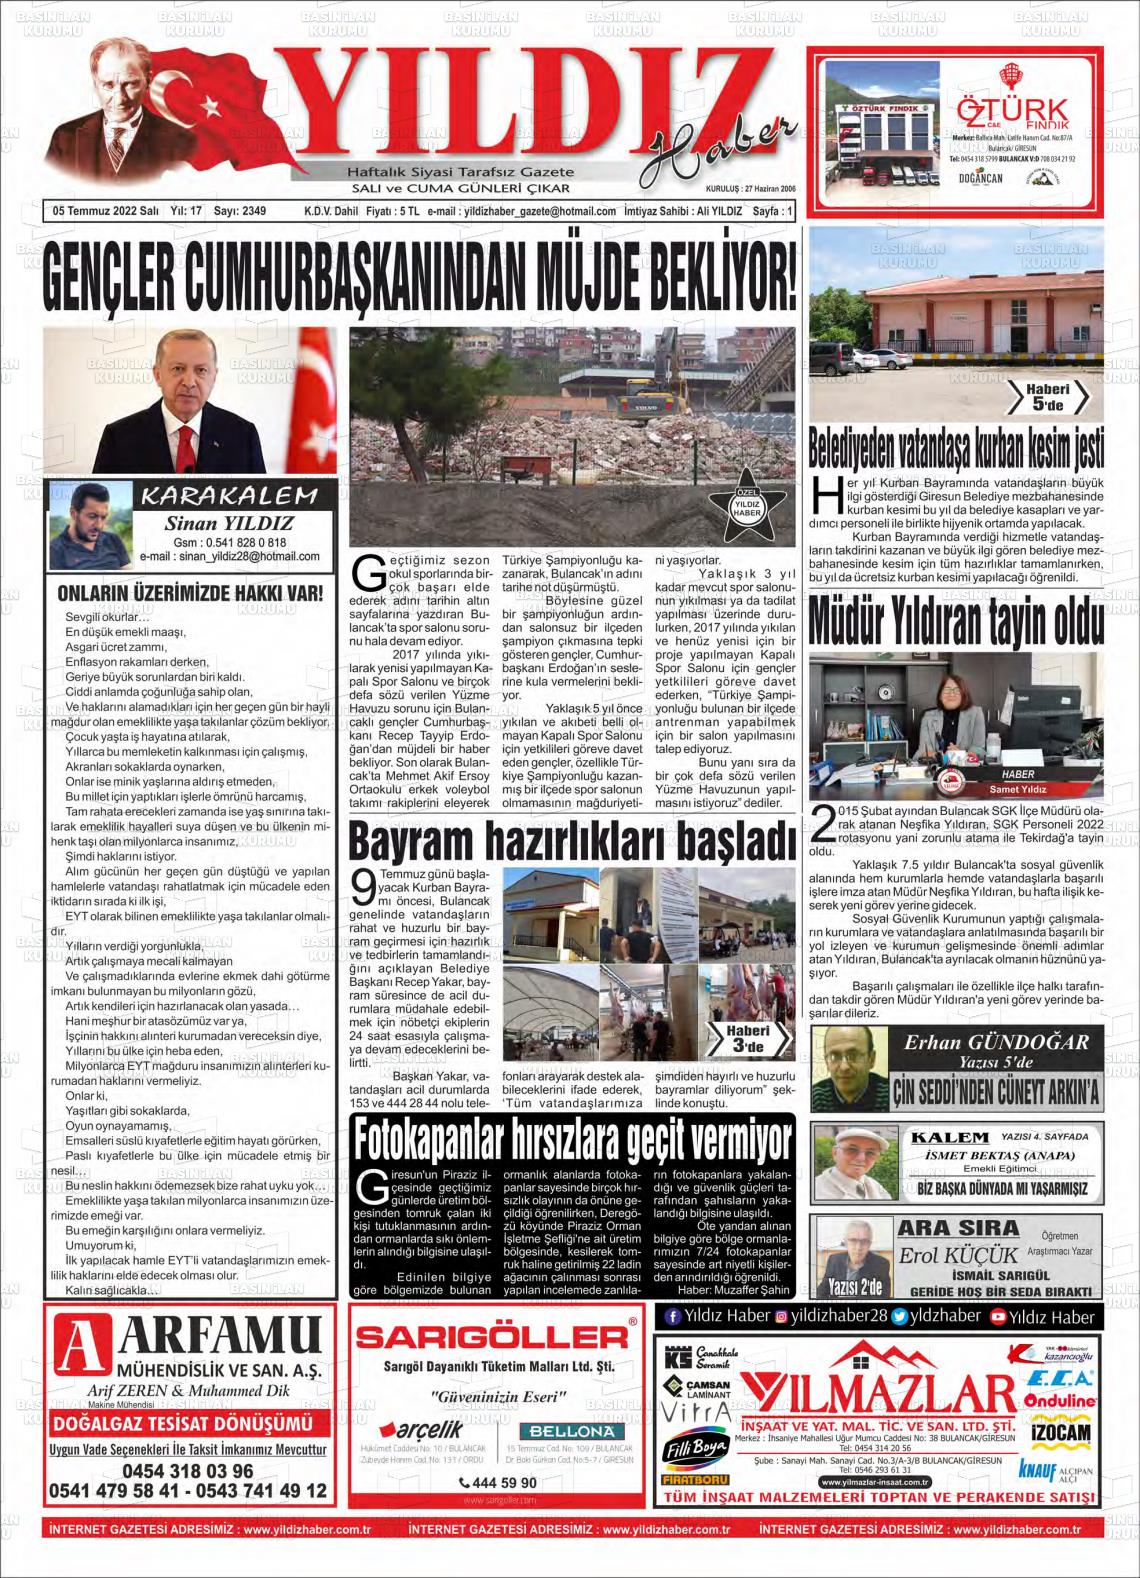 05 Temmuz 2022 Yıldız Haber Gazete Manşeti